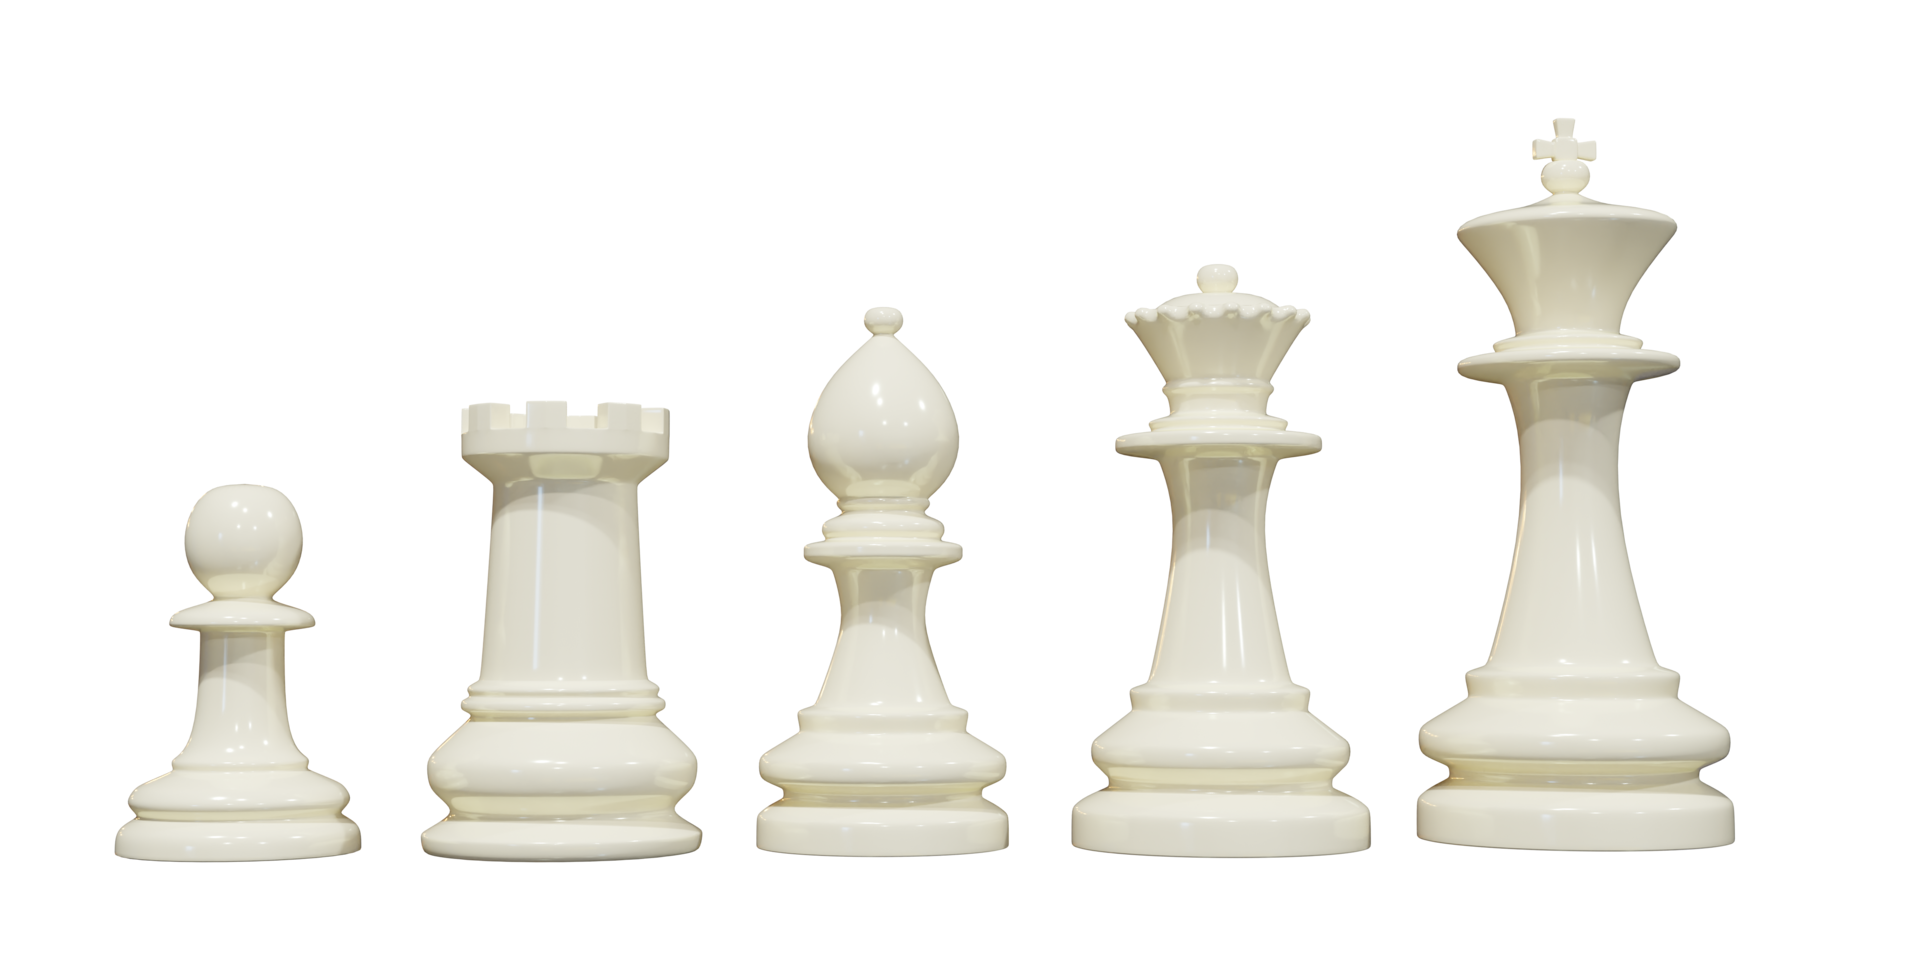 Psd renderização realista em 3d de peças de xadrez em um fundo transparente